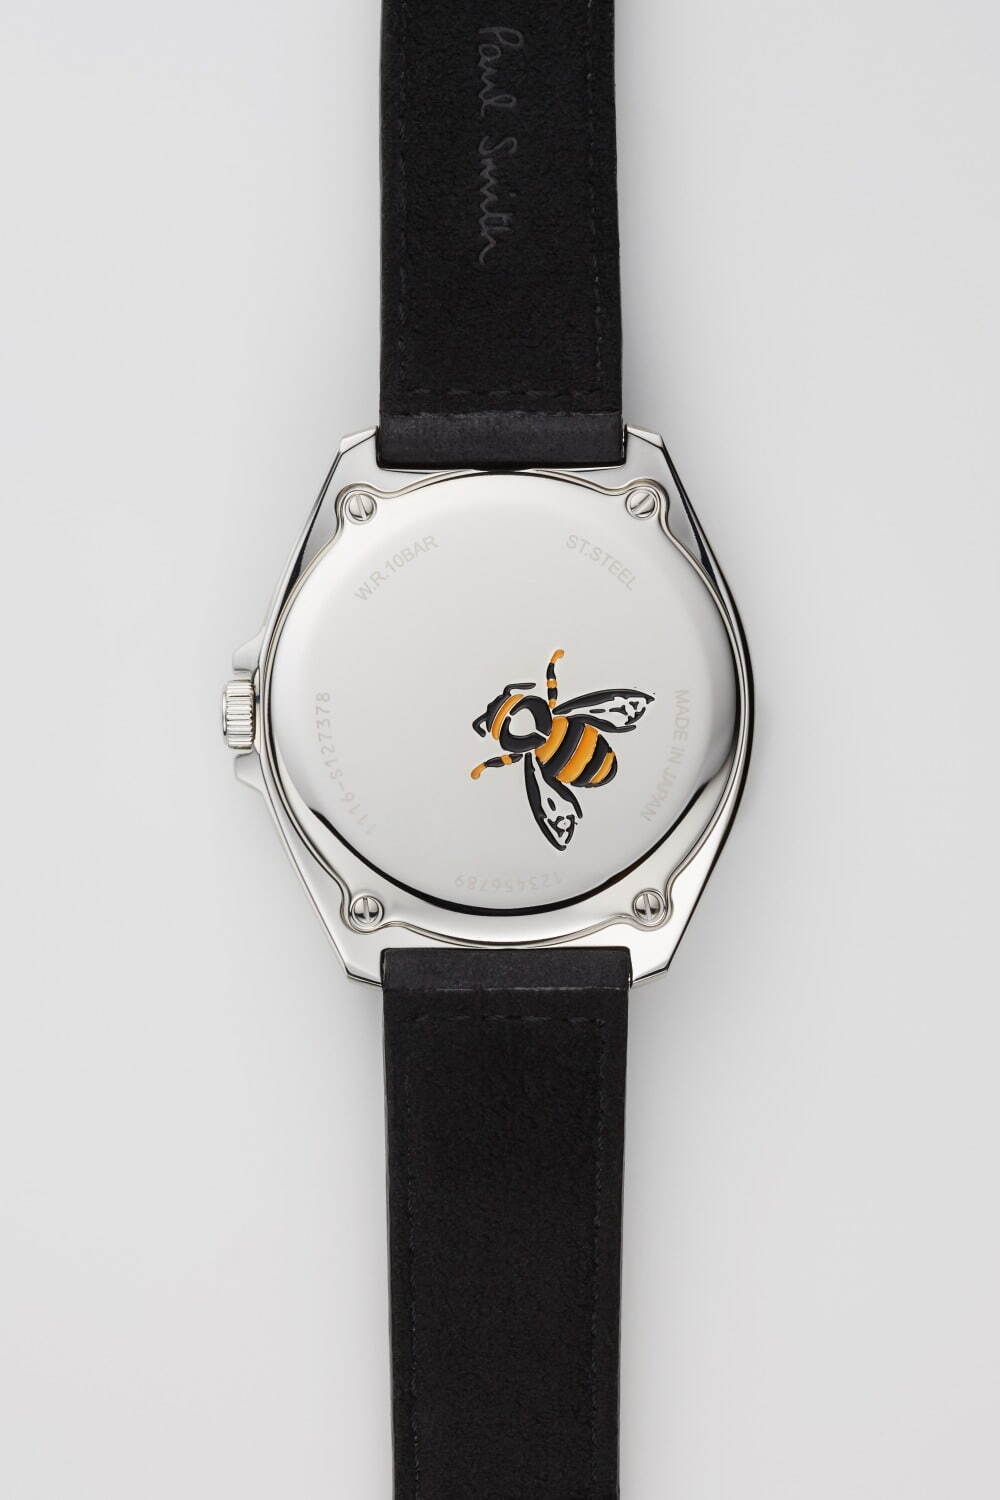 ポール スミス ランドローバー 着想の新作腕時計 ミリタリーカラー文字盤 迷彩柄ストラップ ファッションプレス